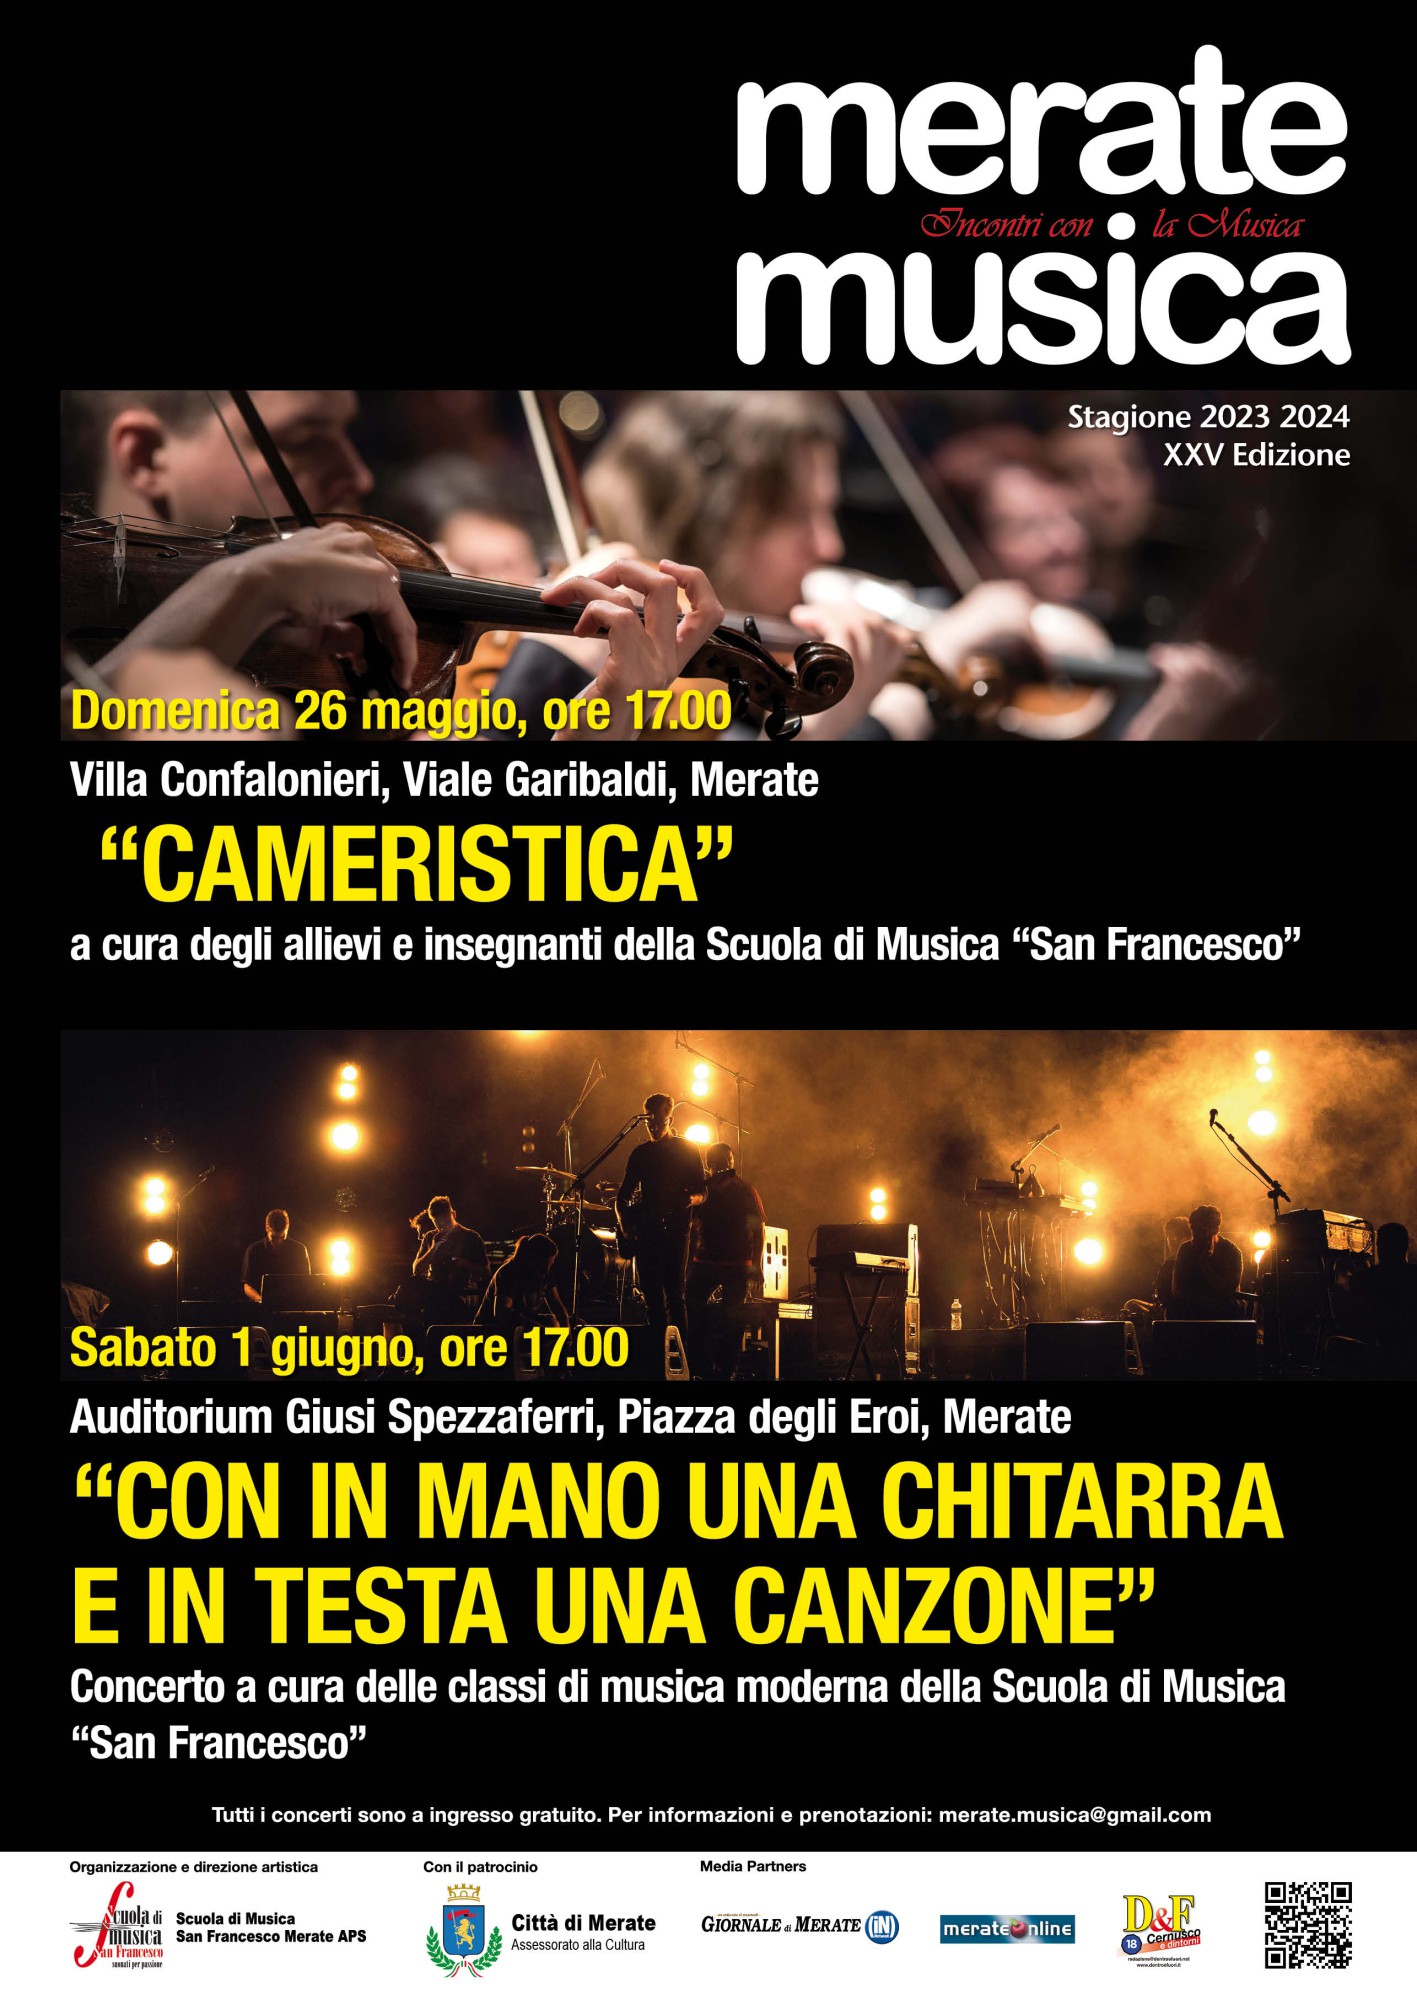 Merate_Musica_-_Cameristica_-_Moderna_-_Locandina_2024.jpg (443 KB)